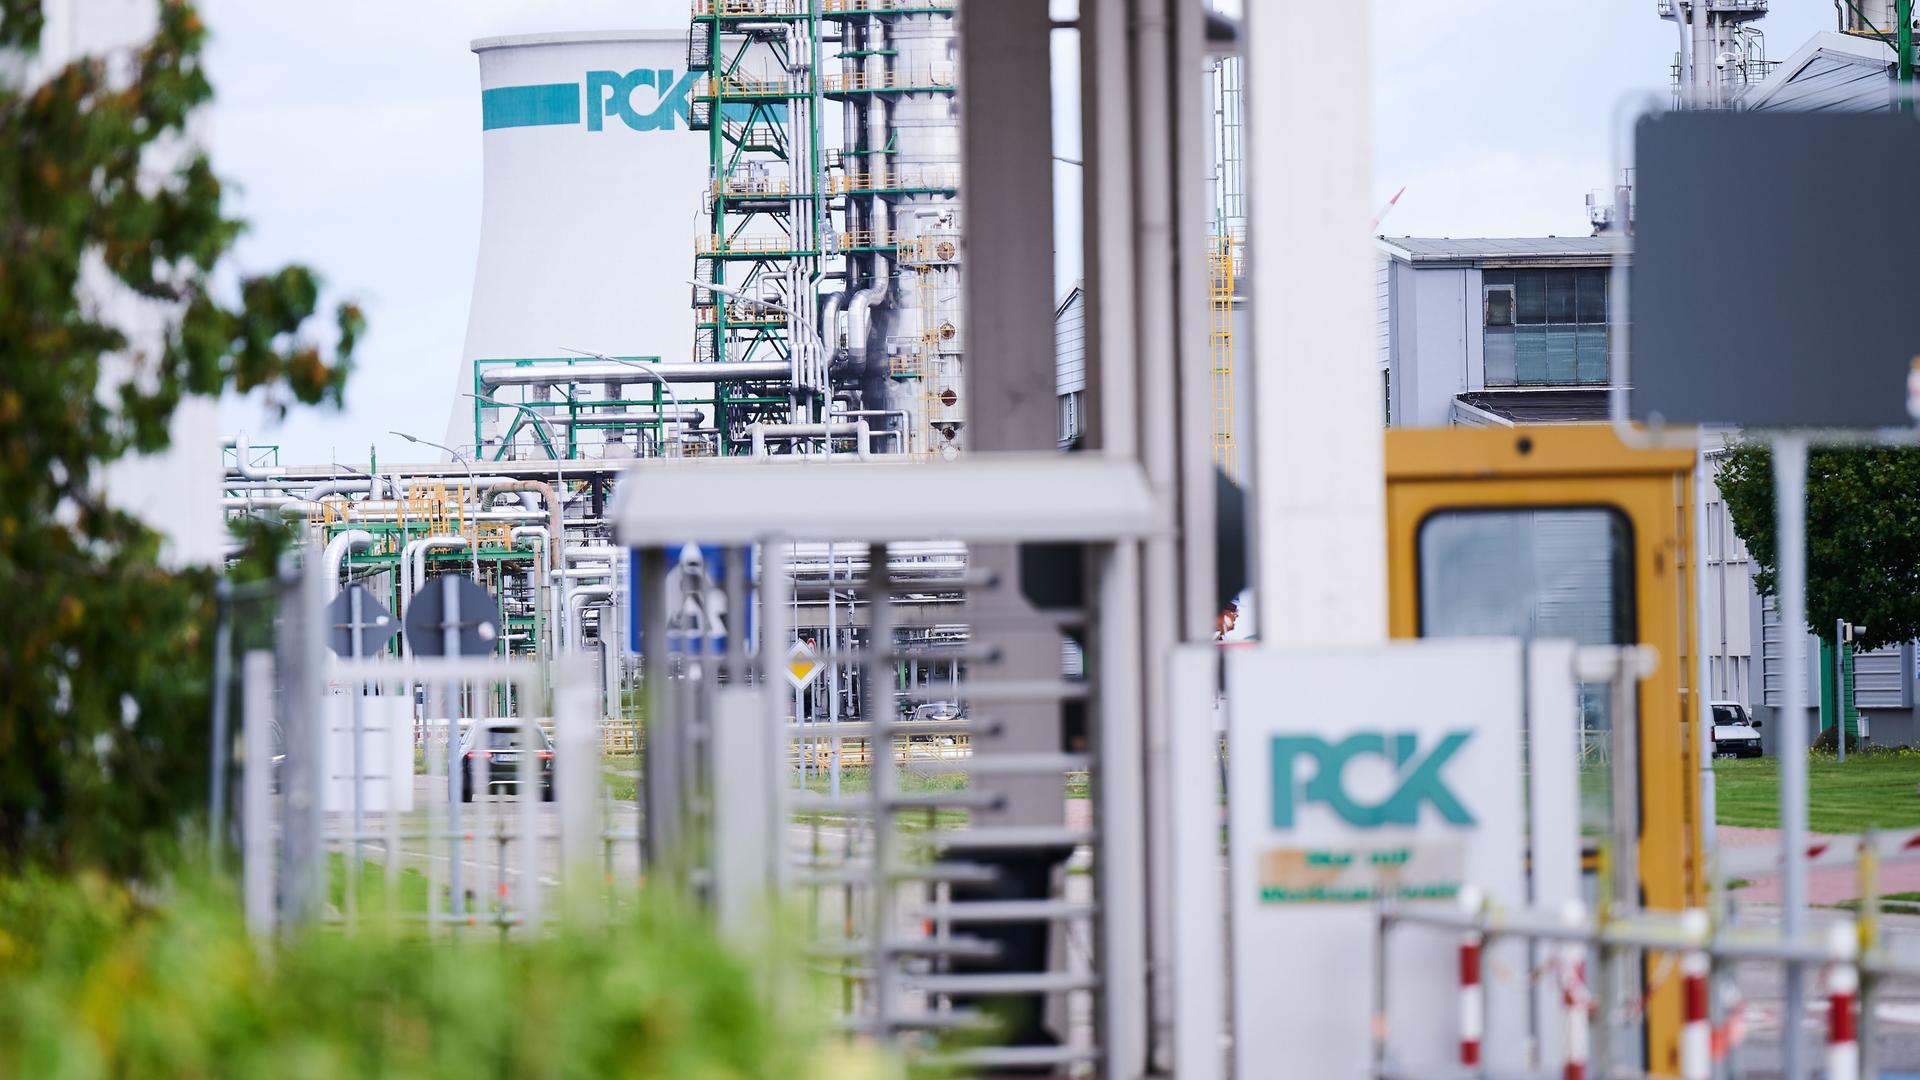 Das Bild zeigt das Werksgelände der Raffinerie PCK in Schwedt. Das Logo PCK ist im Vordergrund am Eingang zu sehen und im Hintergrund an einem Tank.